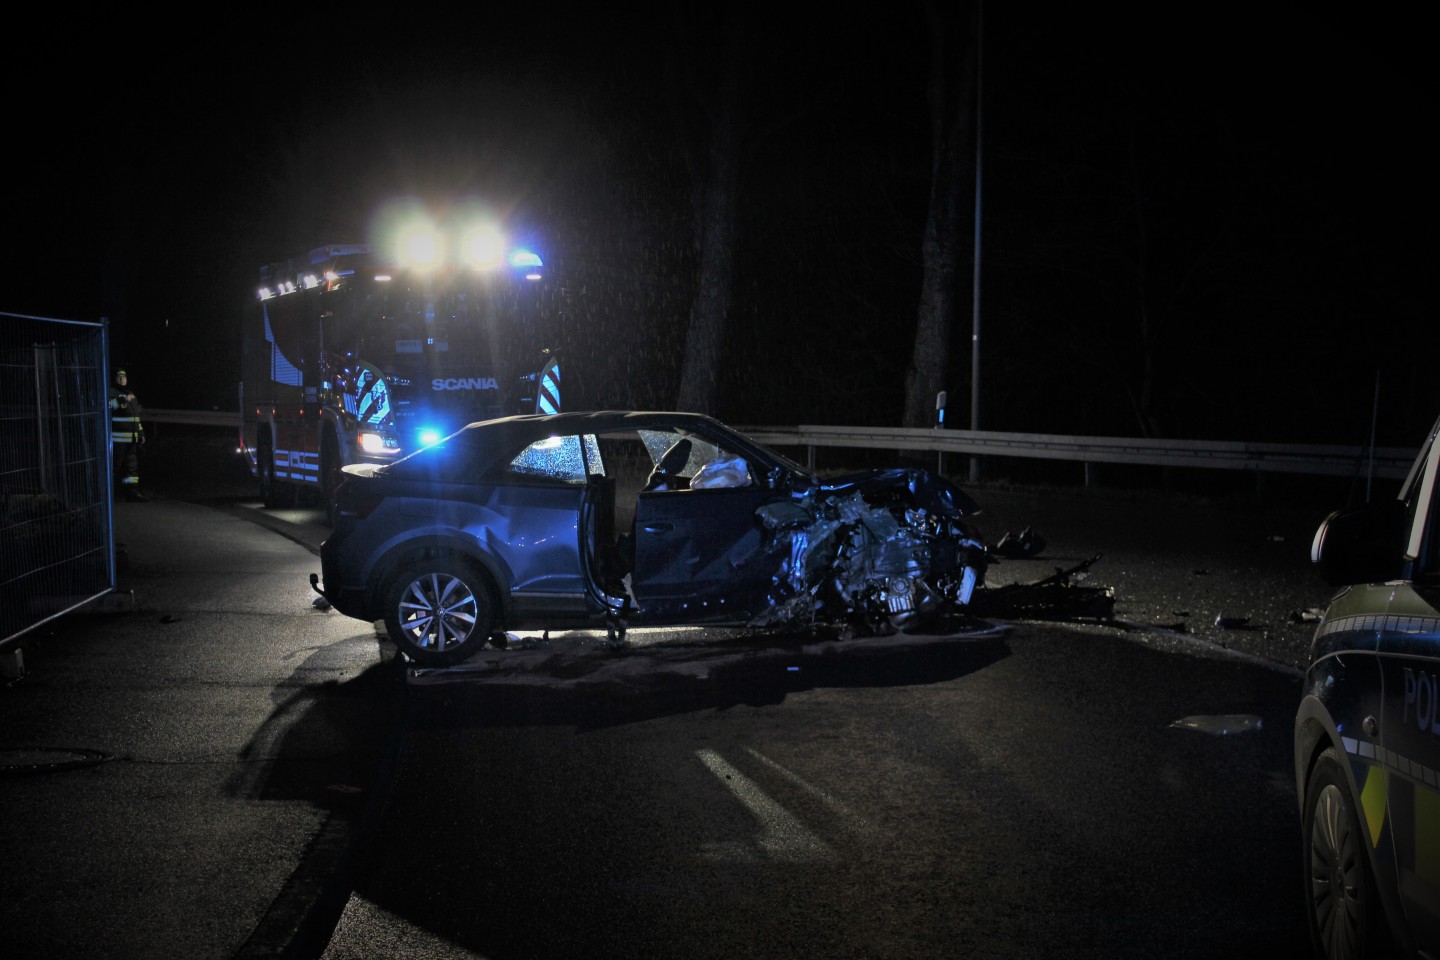 POL-PB: 15-Jähriger verunglückt mit Auto des Vaters - zwei Schwerverletzte Paderborn (ots)